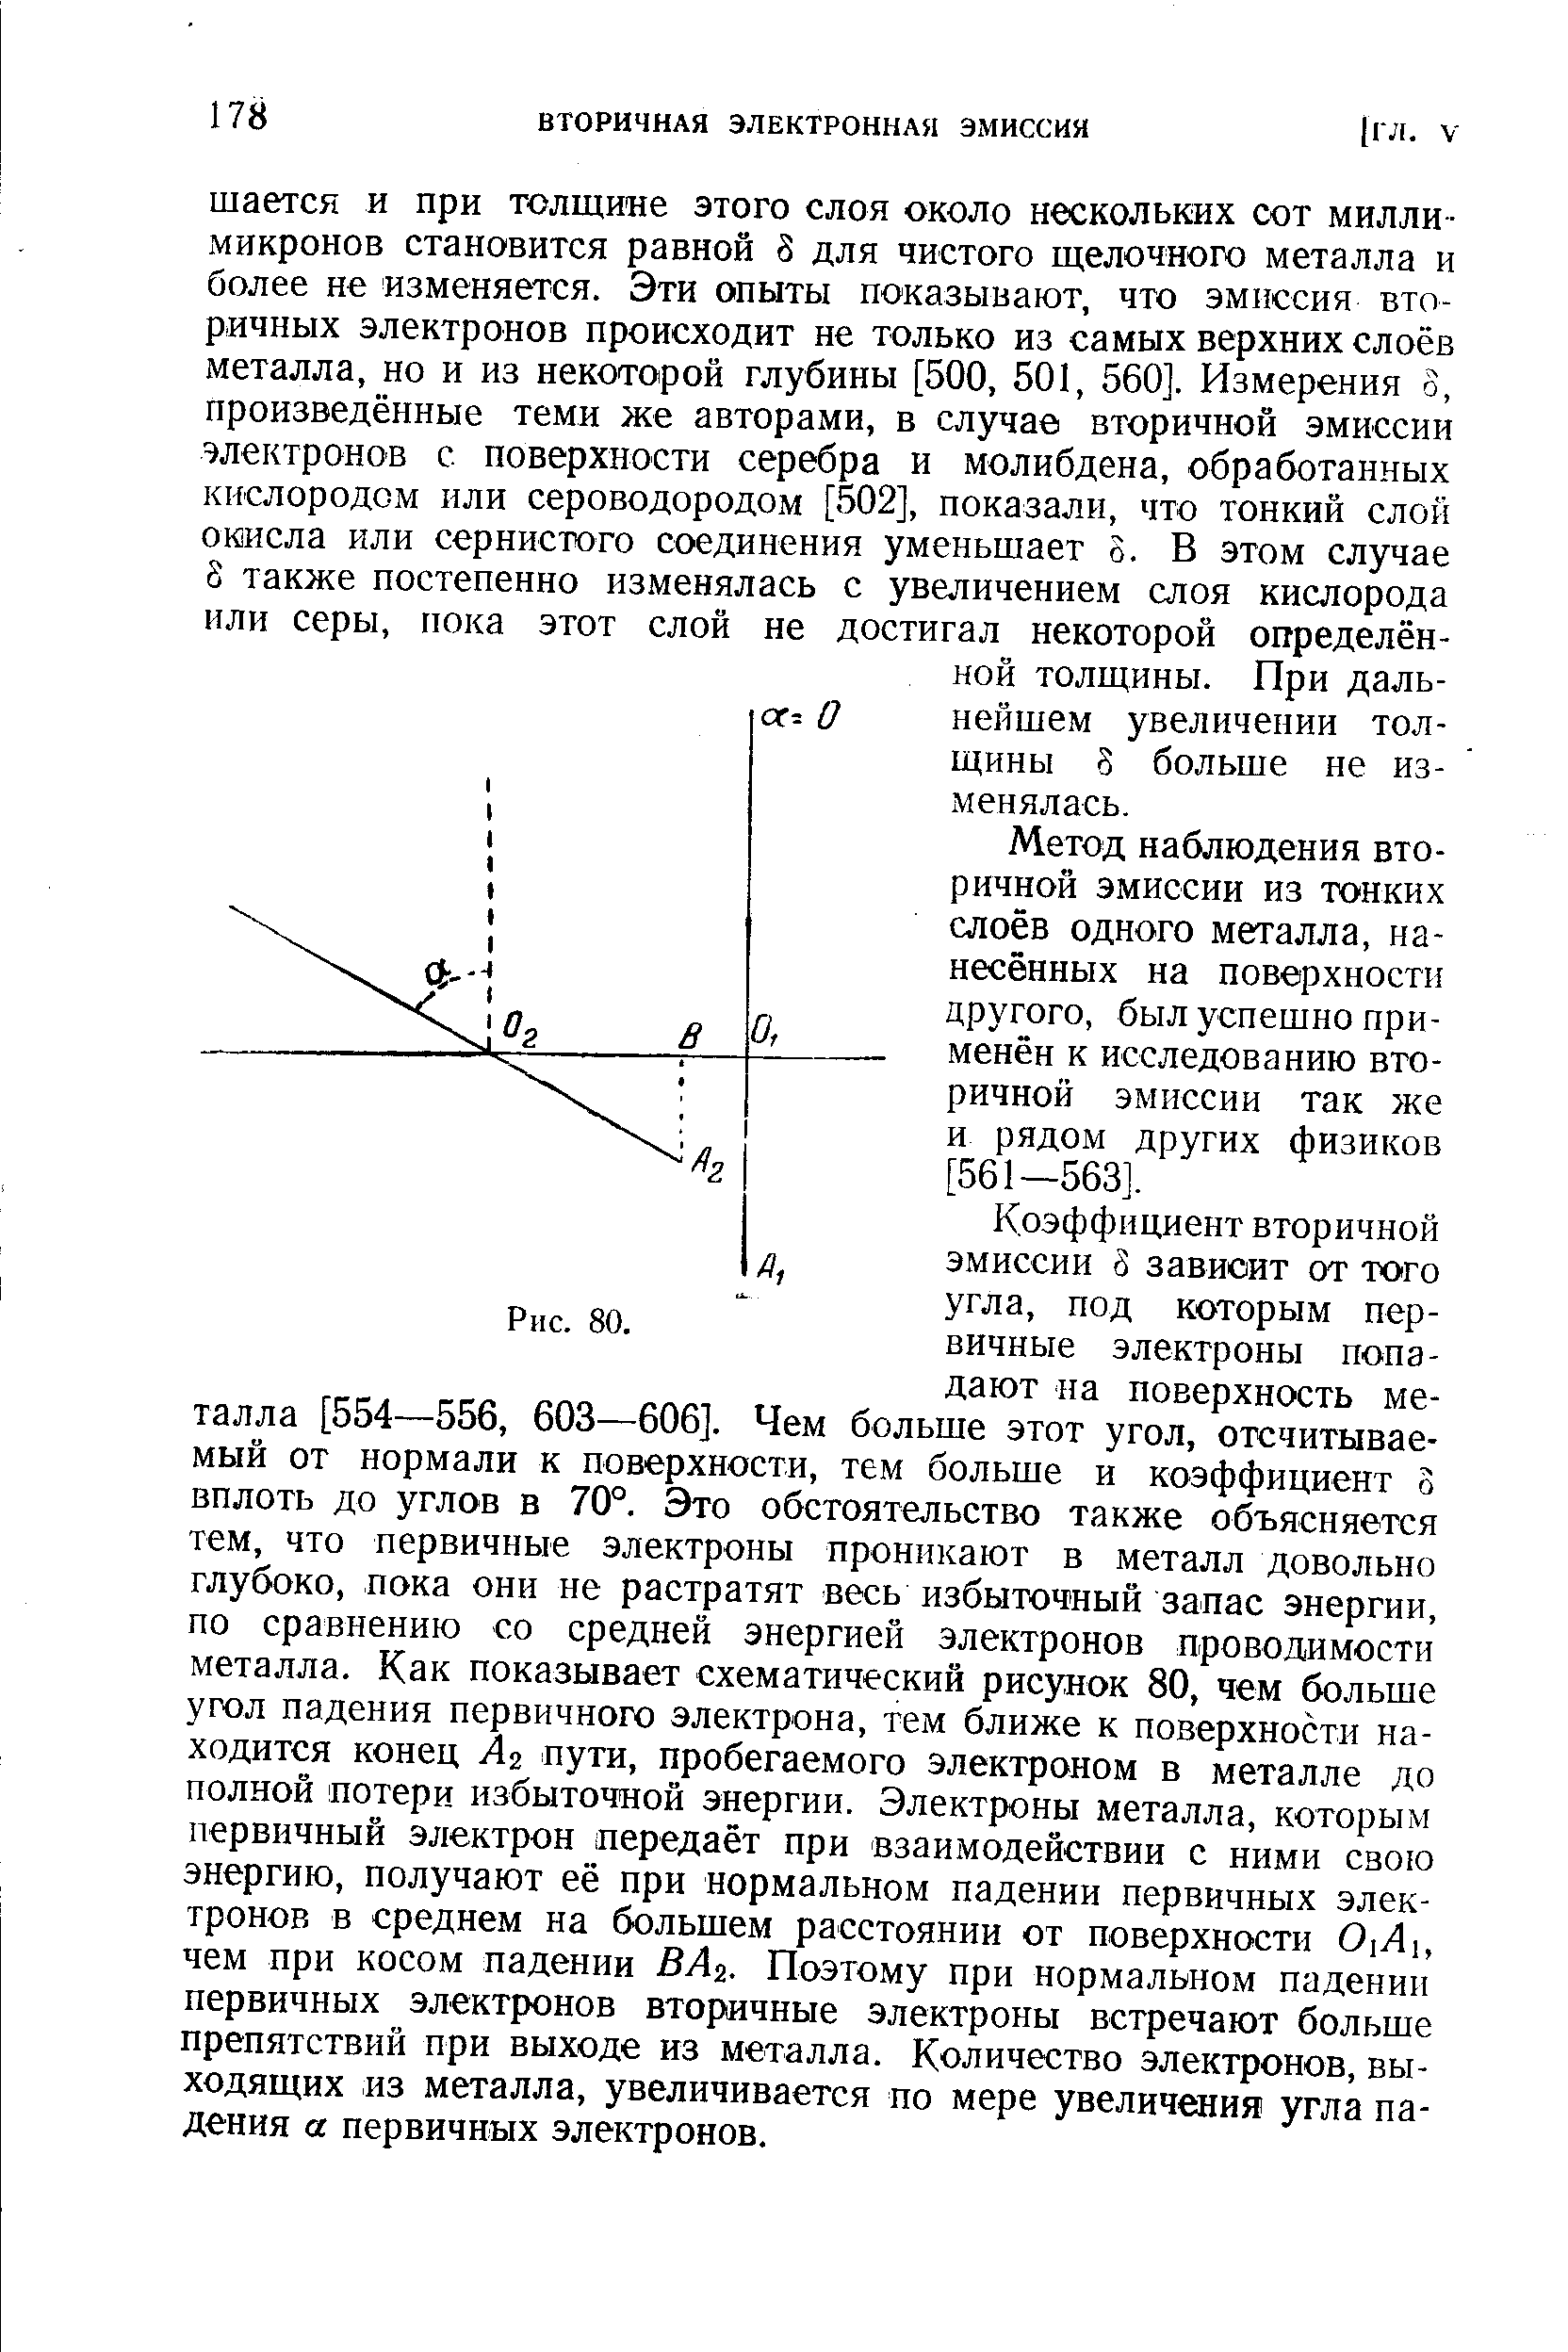 Метод наблюдения вторичной эмиссии из тонких слоёв одного металла, нанесённых на поверхности другого, был успешно применён к исследованию вторичной эмиссии так же и рядом других физиков [561—563].